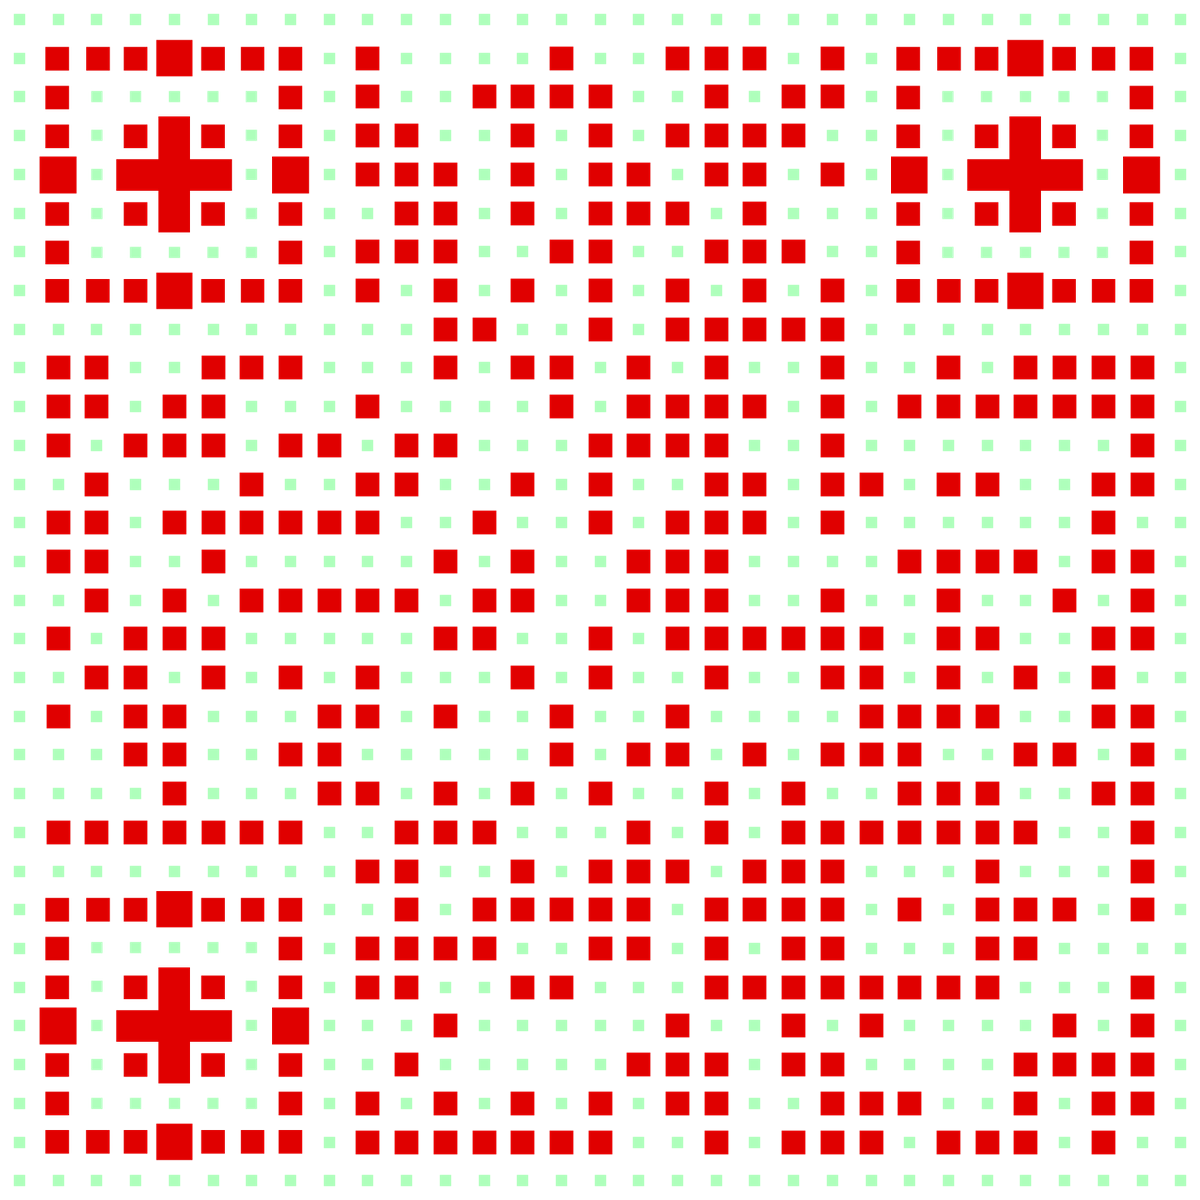 简约红绿米字格二维码生成器-平面静态-无背景码